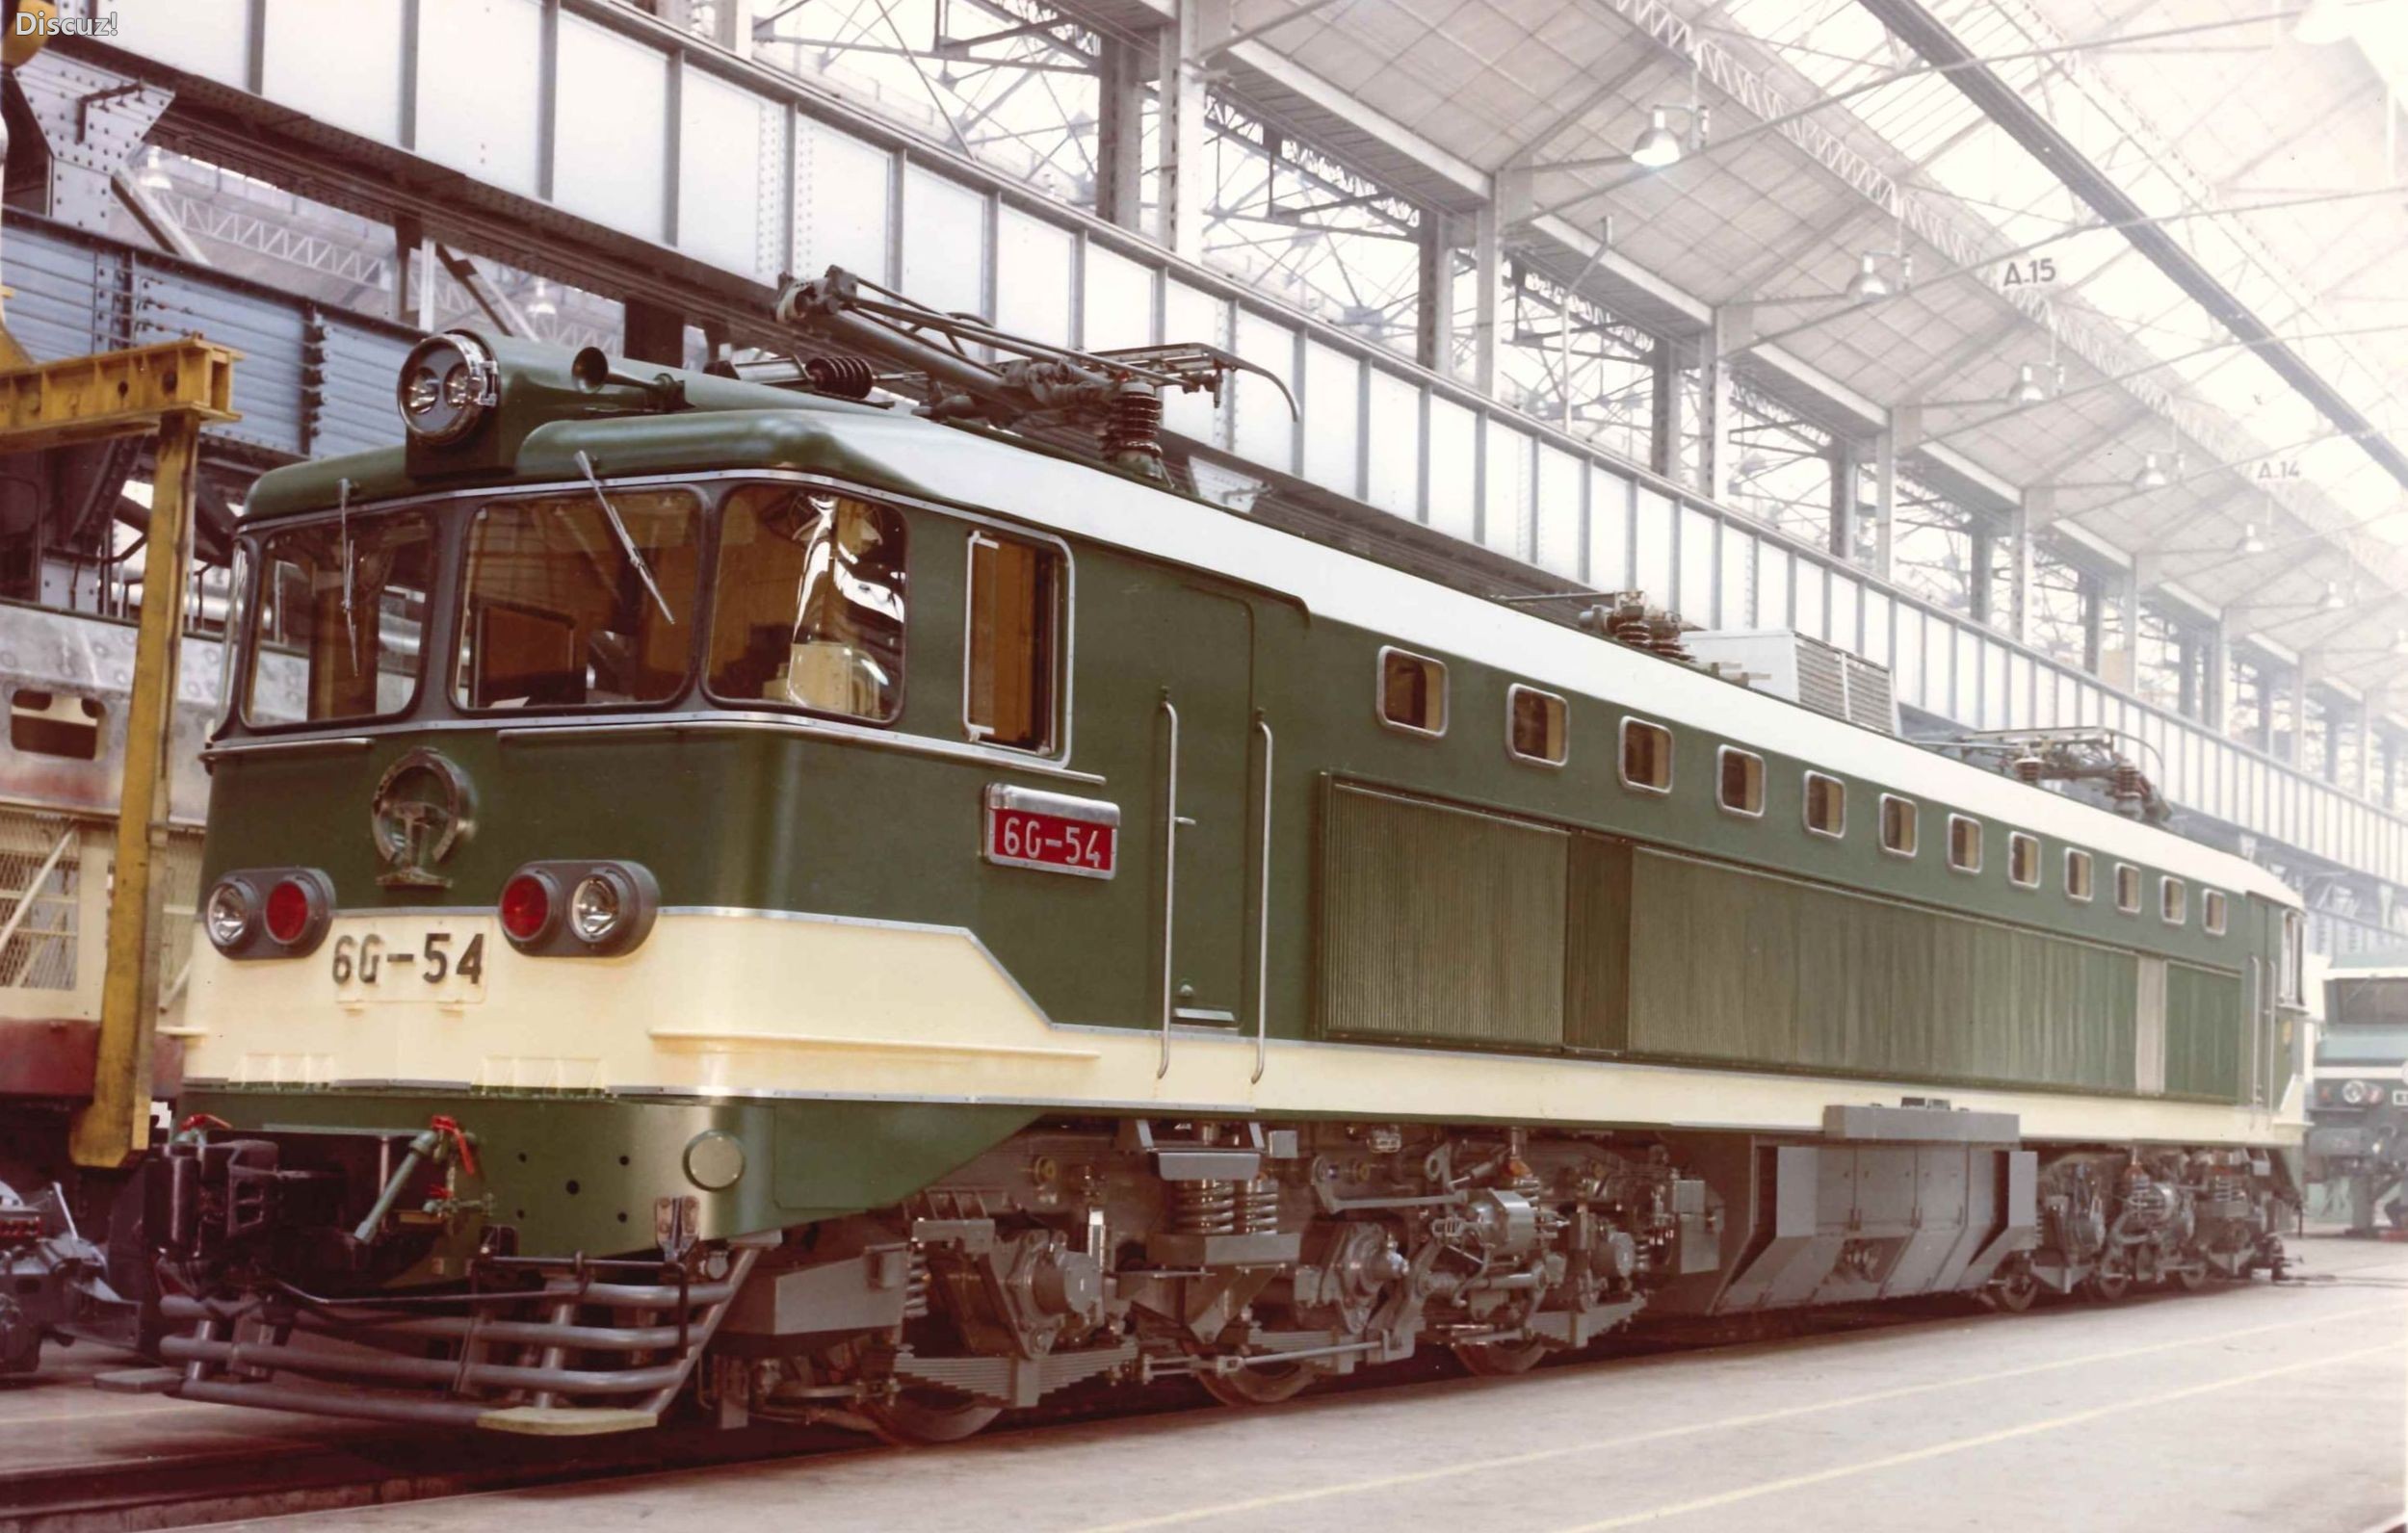 火车科普贴s01e08宝成铁路上的法国两兄弟法国6y2型6g型电力机车